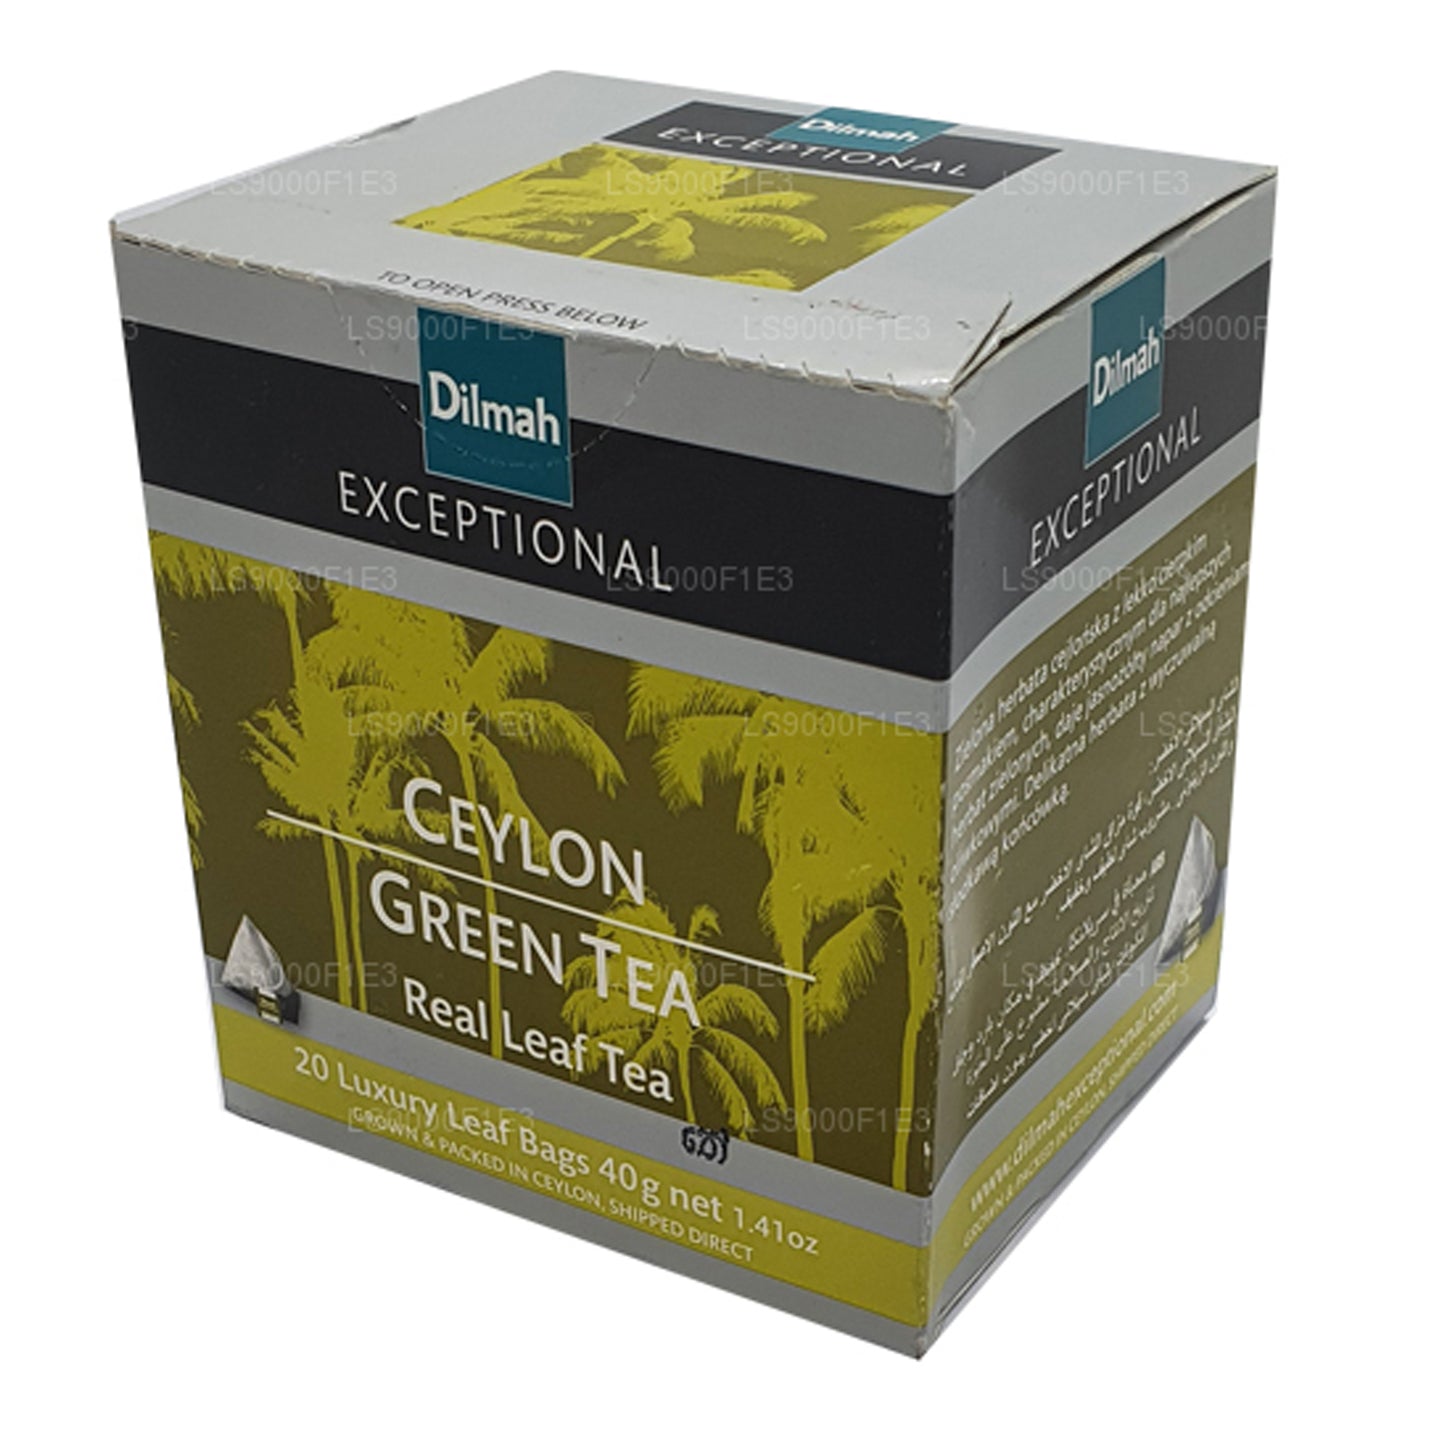 Dilmah Wyjątkowa Zielona Herbata Cejlońska (40g) 20 torebek